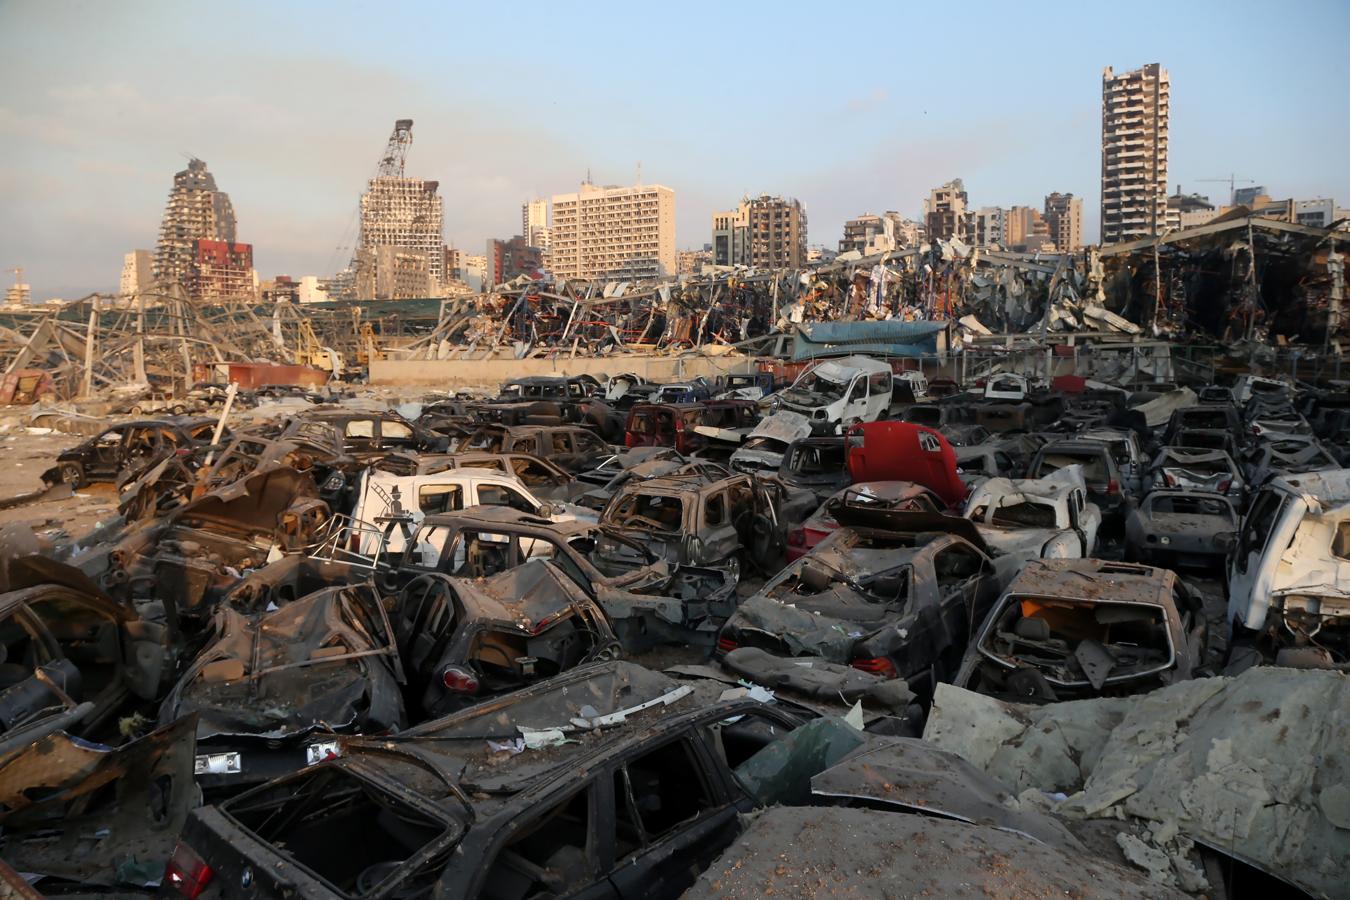 Lo que queda del puerto de Beirut un año después de la explosión, en imágenes